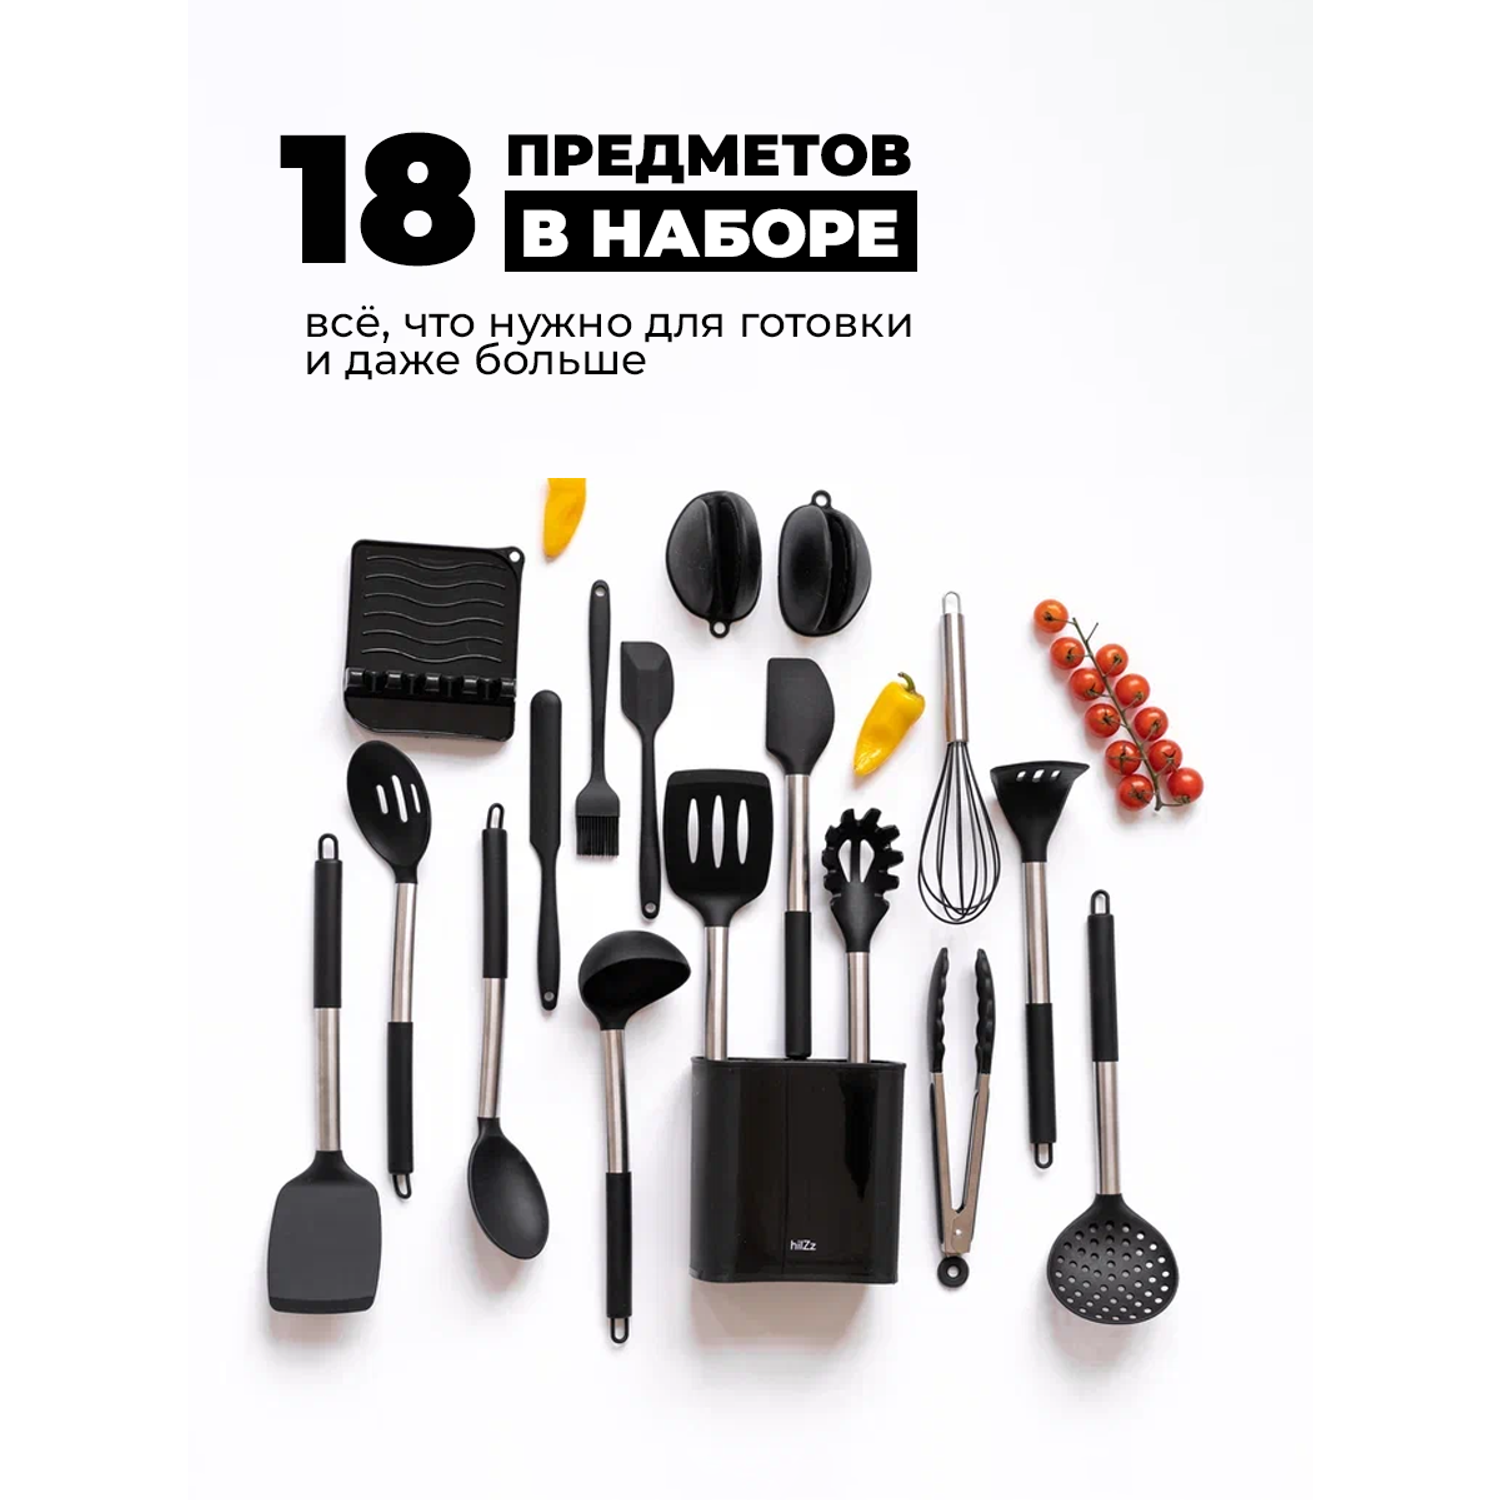 Набор кухонных принадлежностей HILZZ 18 предметов черный - фото 2